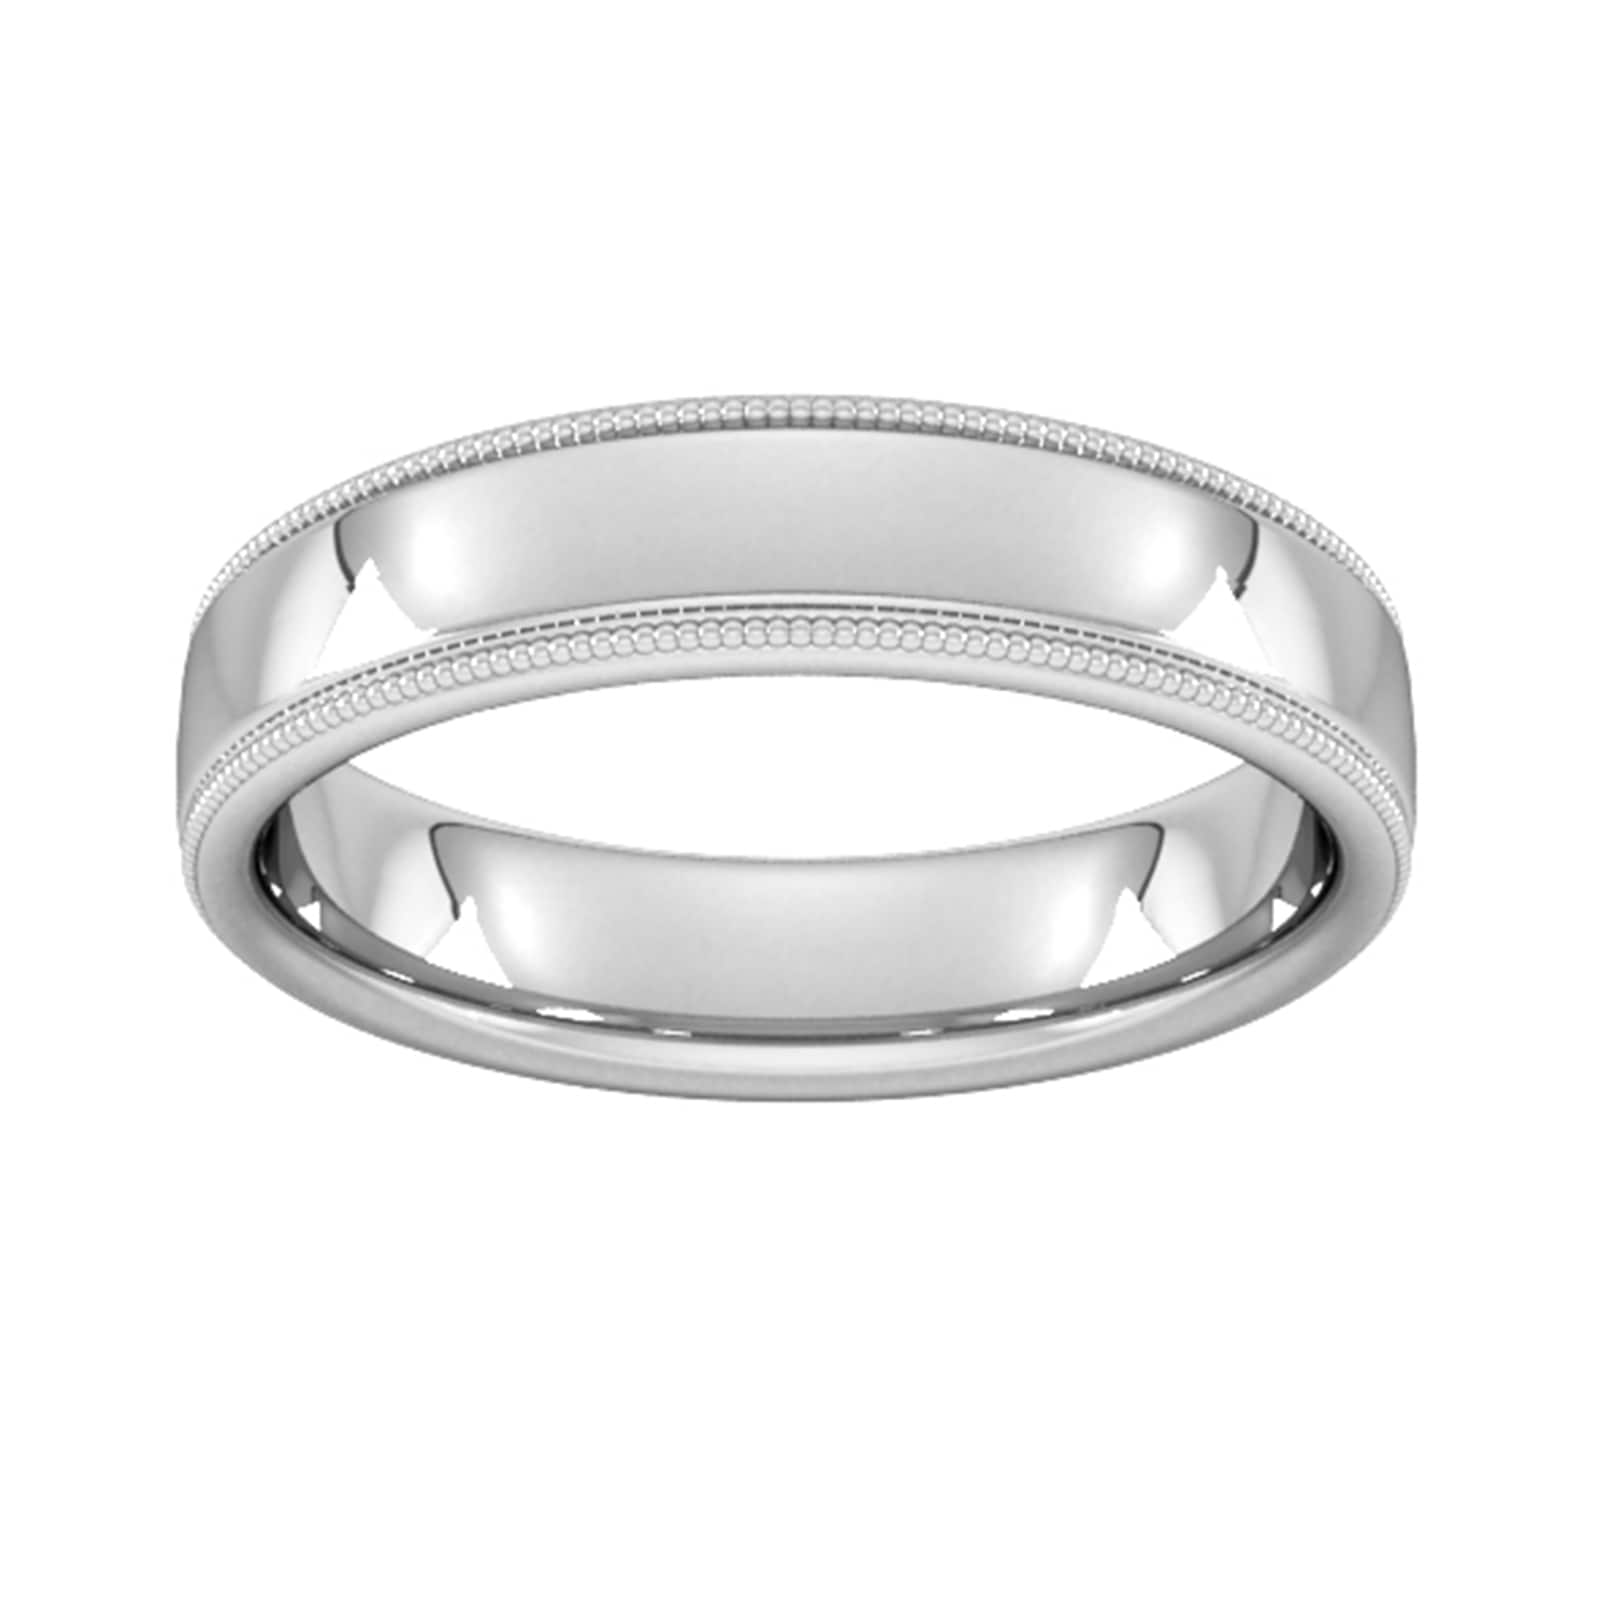 5mm Slight Court Extra Heavy Milgrain Edge Wedding Ring In 18 Carat White Gold - Ring Size N